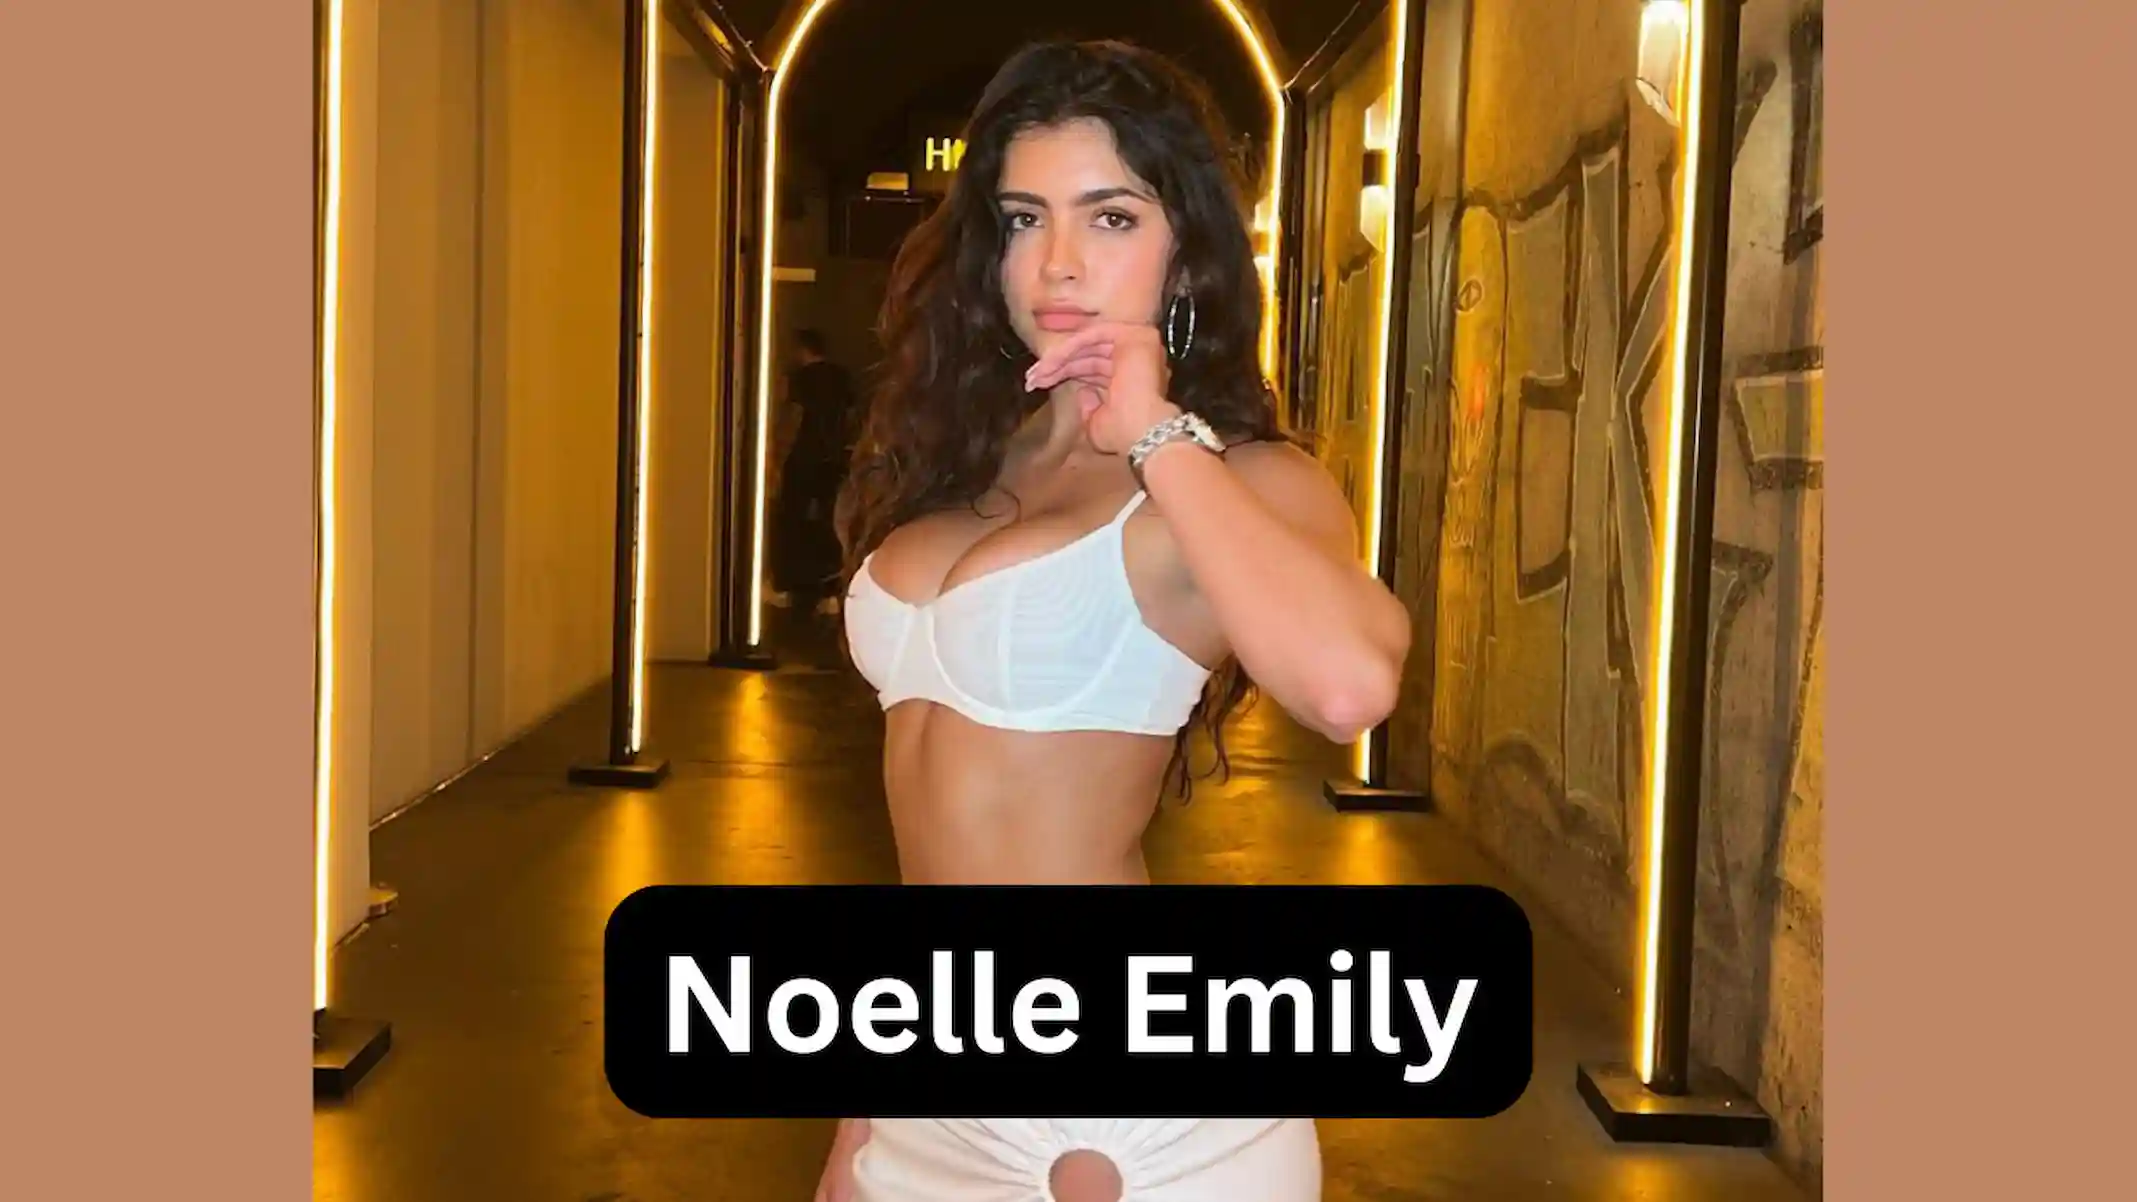 Noelle Emily Wikipedia